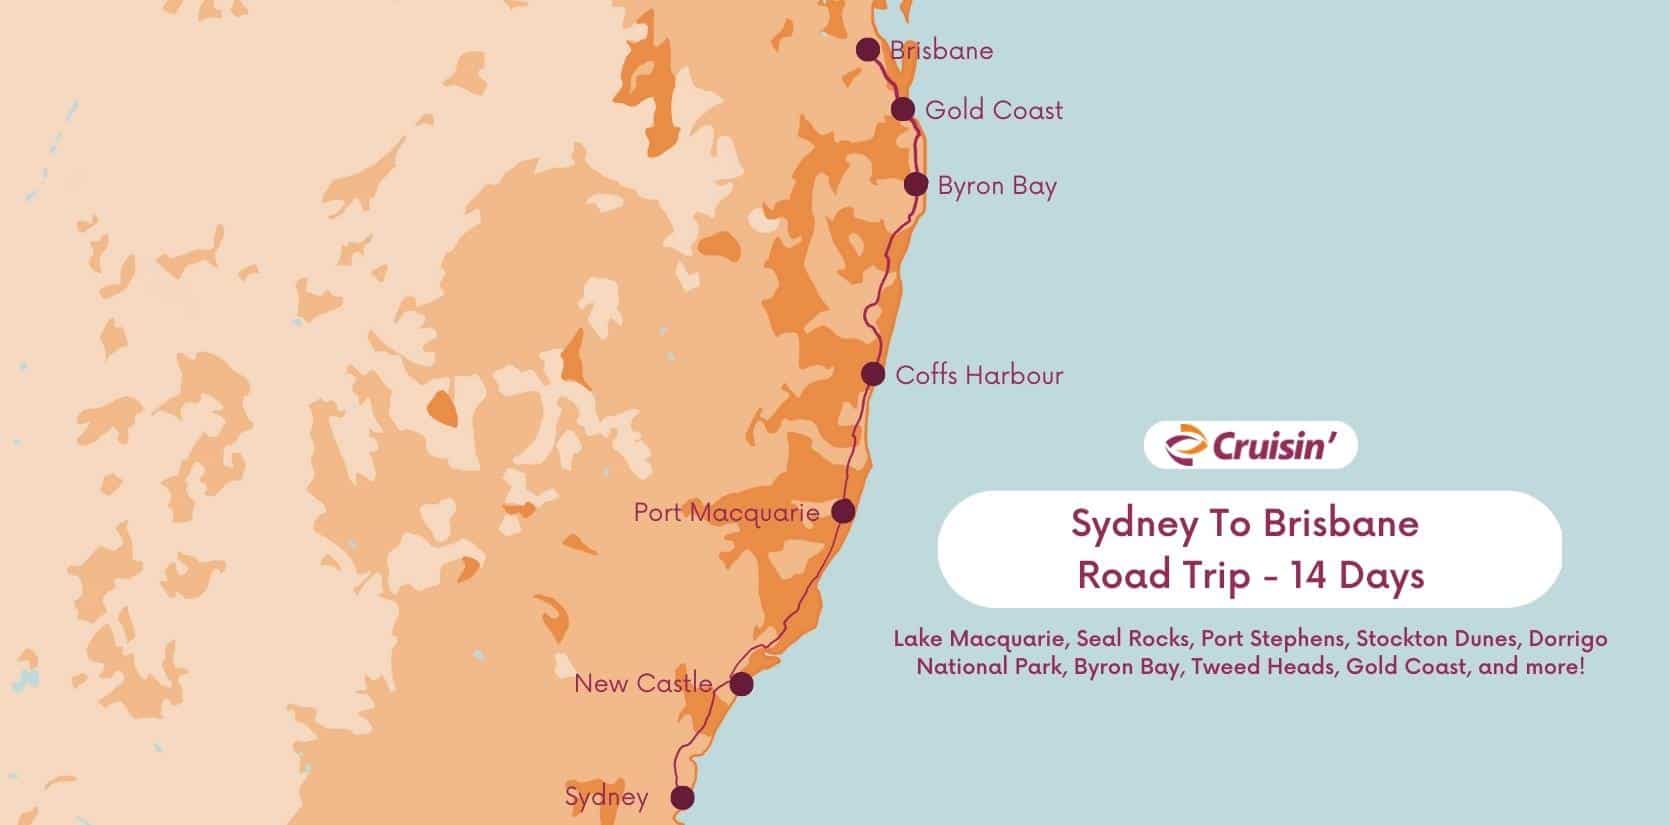 Sydney To Brisbane Road Trip